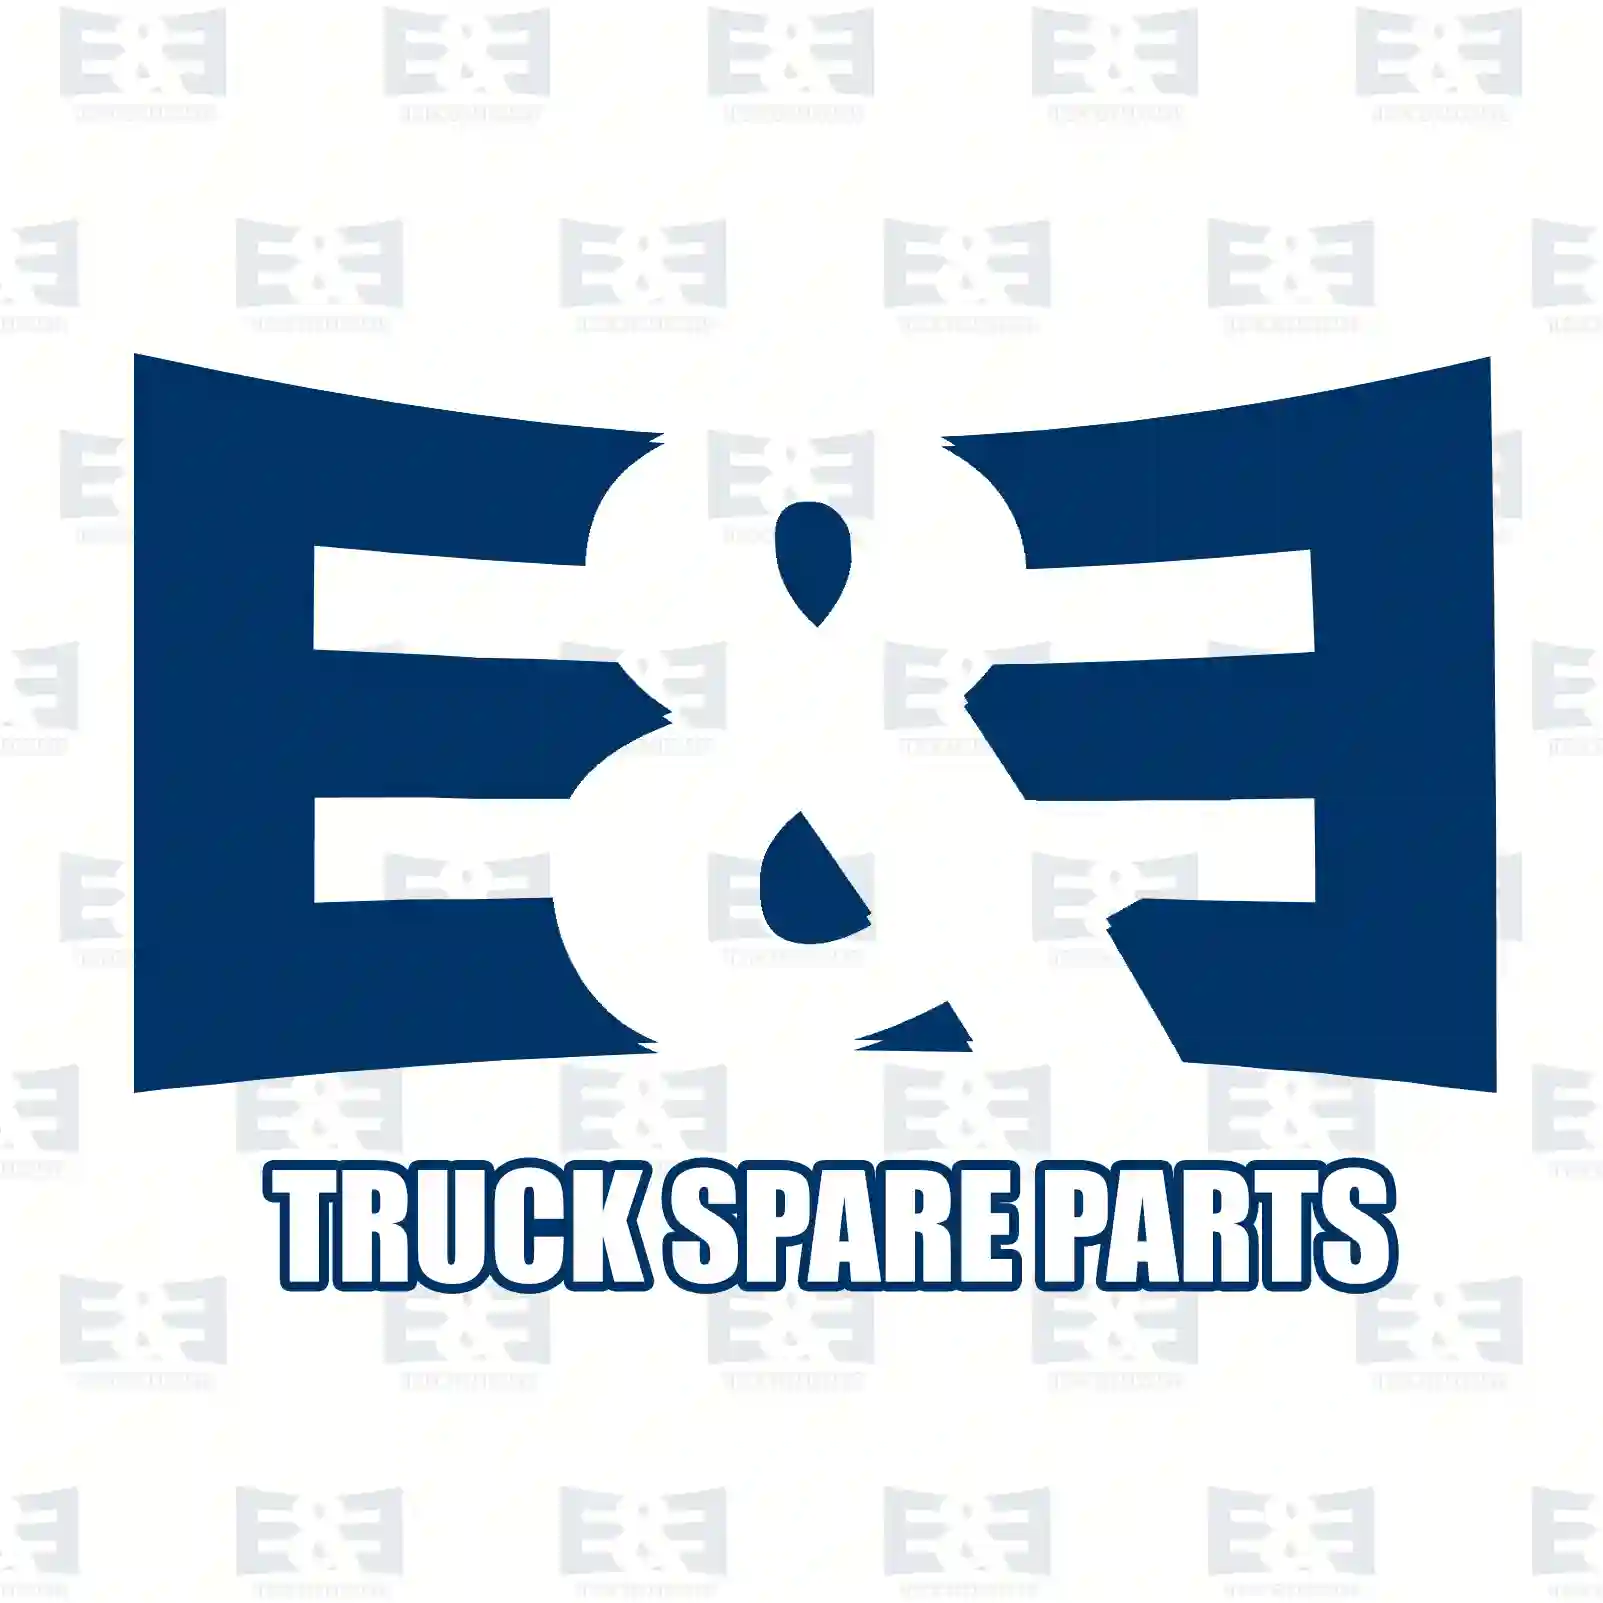 Brake disc, 2E2296300, 42102454, , , , , , , ||  2E2296300 E&E Truck Spare Parts | Truck Spare Parts, Auotomotive Spare Parts Brake disc, 2E2296300, 42102454, , , , , , , ||  2E2296300 E&E Truck Spare Parts | Truck Spare Parts, Auotomotive Spare Parts